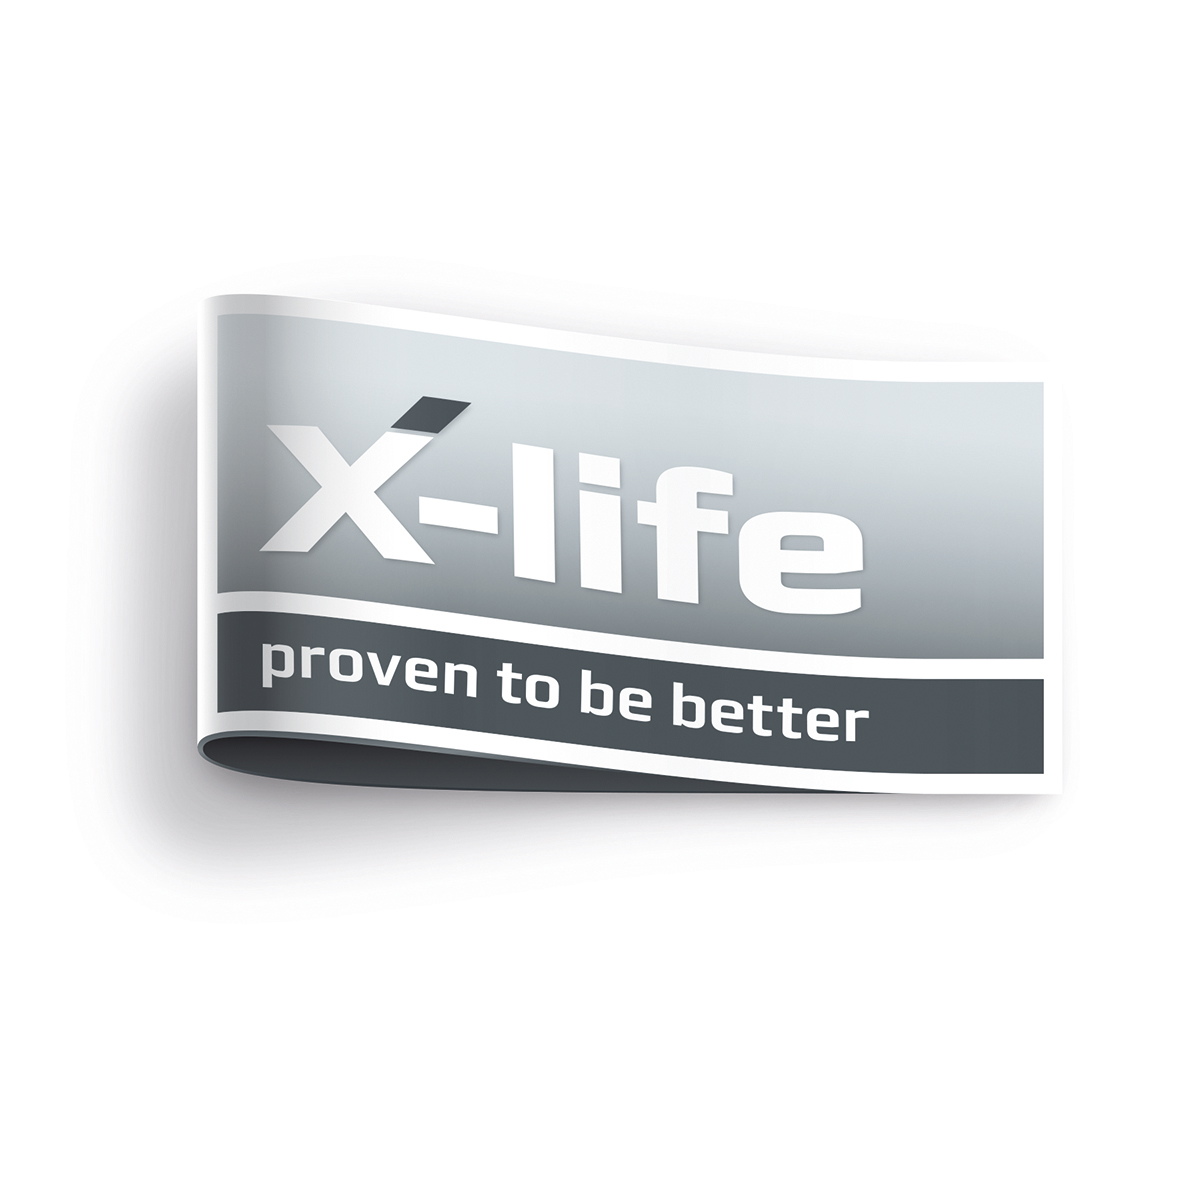 X-life是舍弗勒产品的质量标志，在载荷和设计尺寸不变，且基本动载荷更高的情况下，明显具有更长的额定寿命和使用寿命。